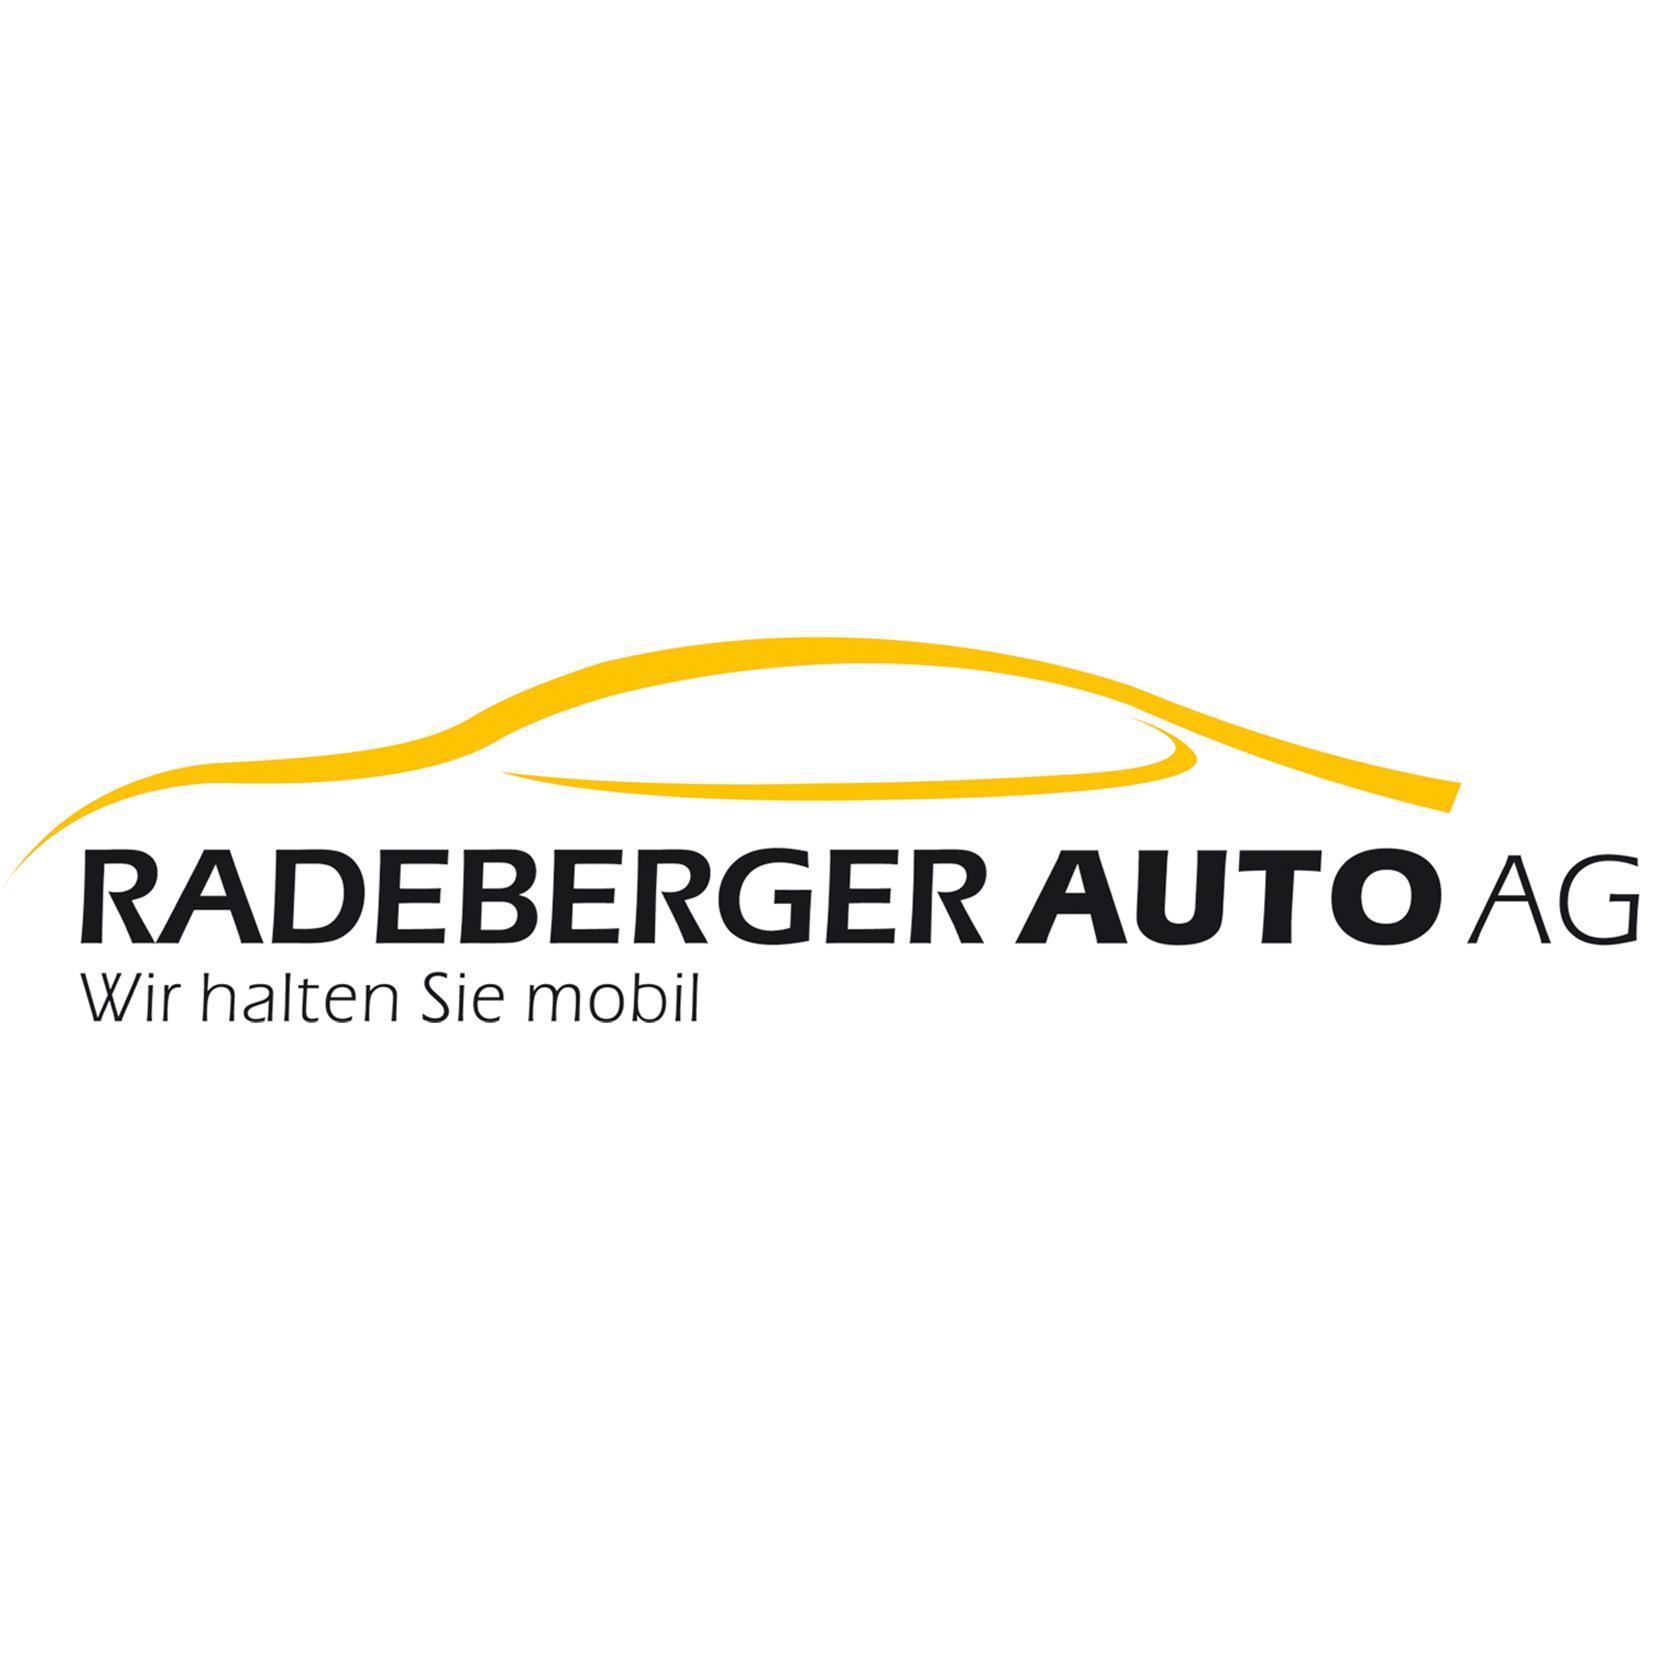 Radeberger Auto AG Logo